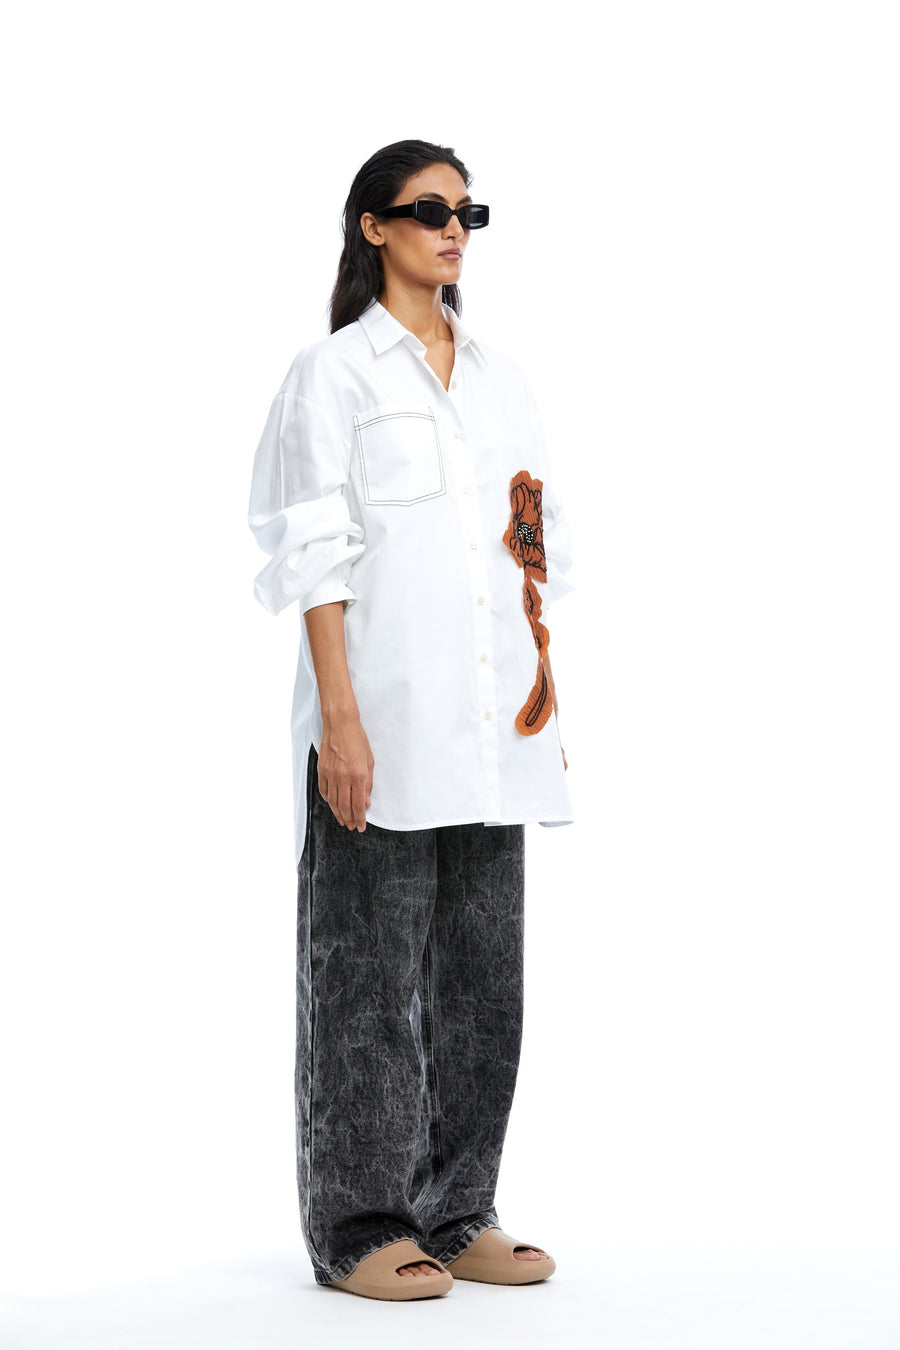 'Heather' Hand Embellished Shirt - Kanika Goyal Label